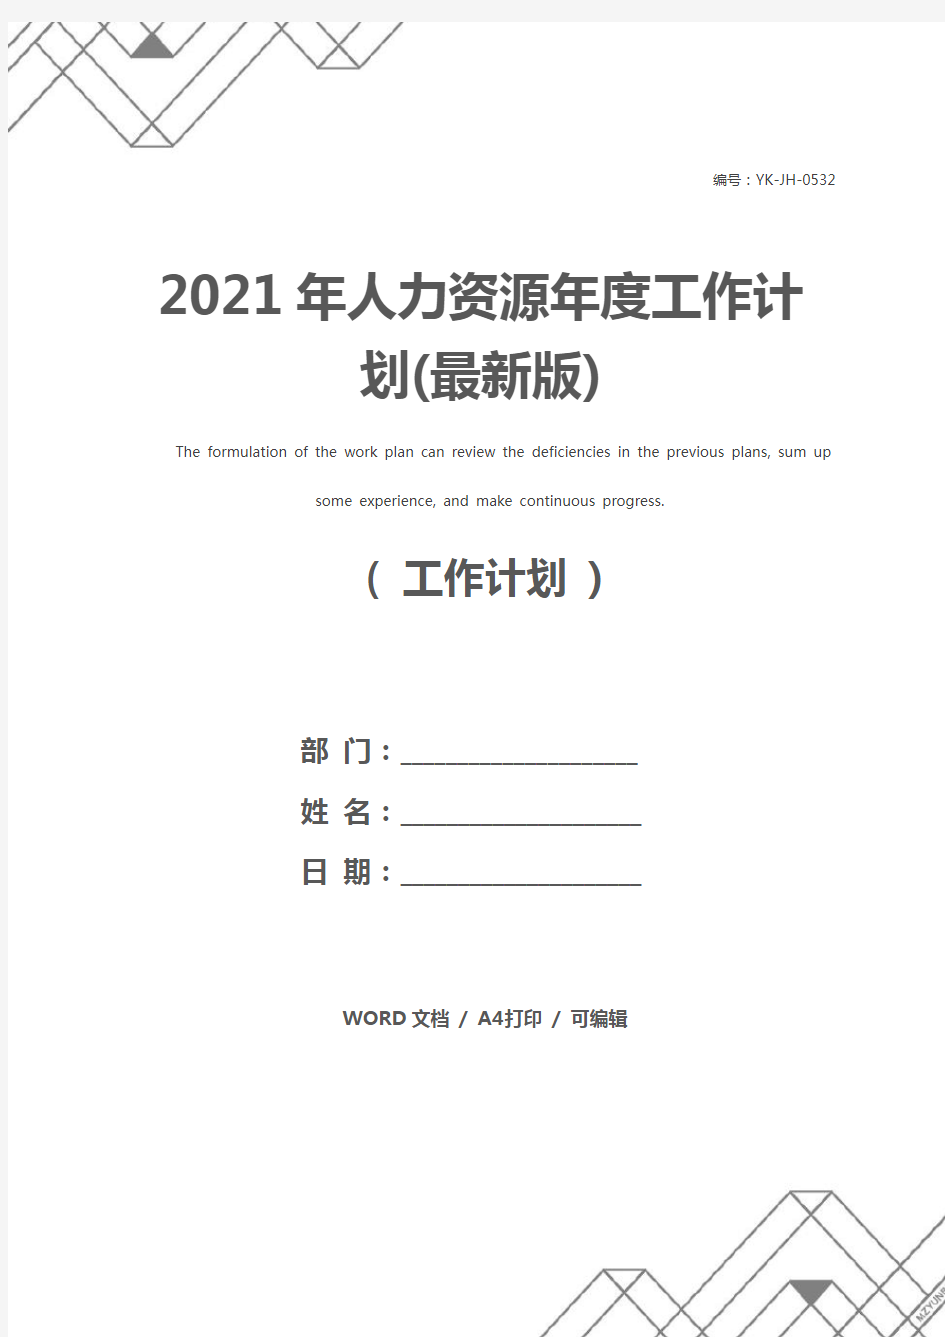 2021年人力资源年度工作计划(最新版)